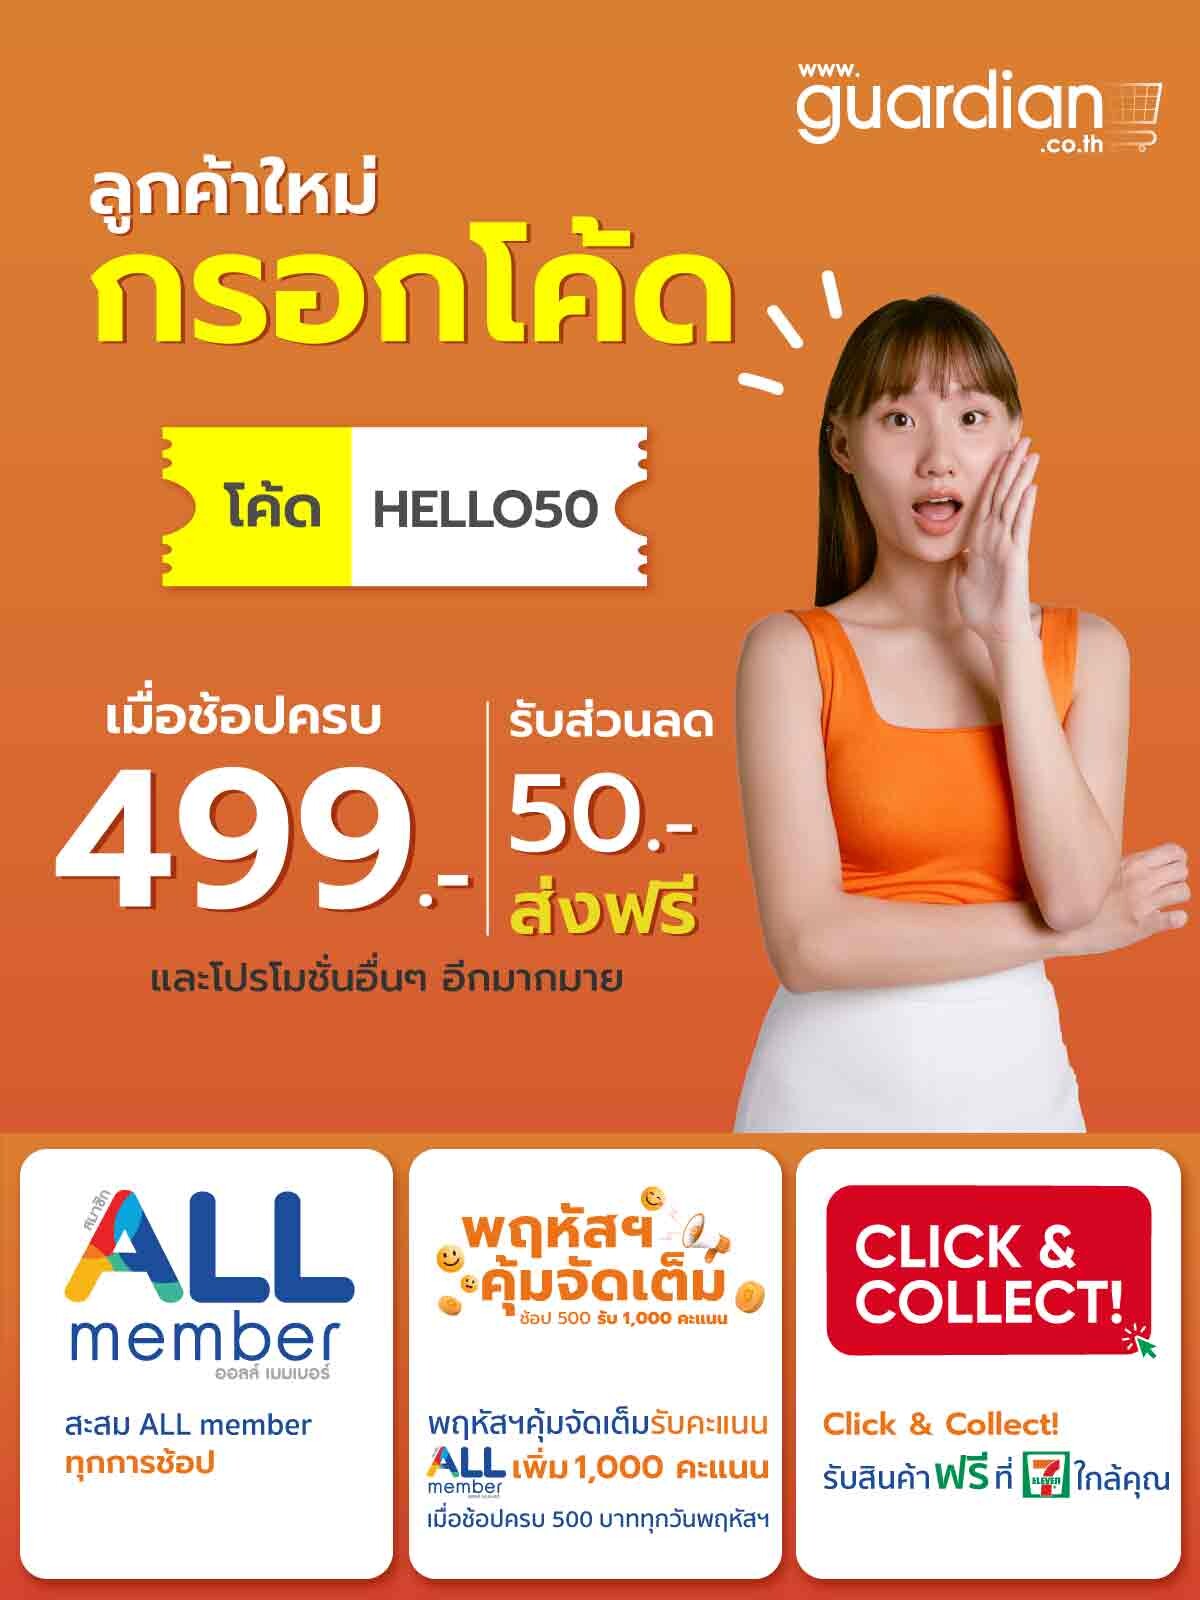 Guardian Thailand เปิดบ้านใหม่ ออนไลน์  สวย สุขภาพดี ครบ จบที่เว็บเดียว โปรโมชั่นเพียบ!! ช้อปภายใน 23 ก.พ. นี้